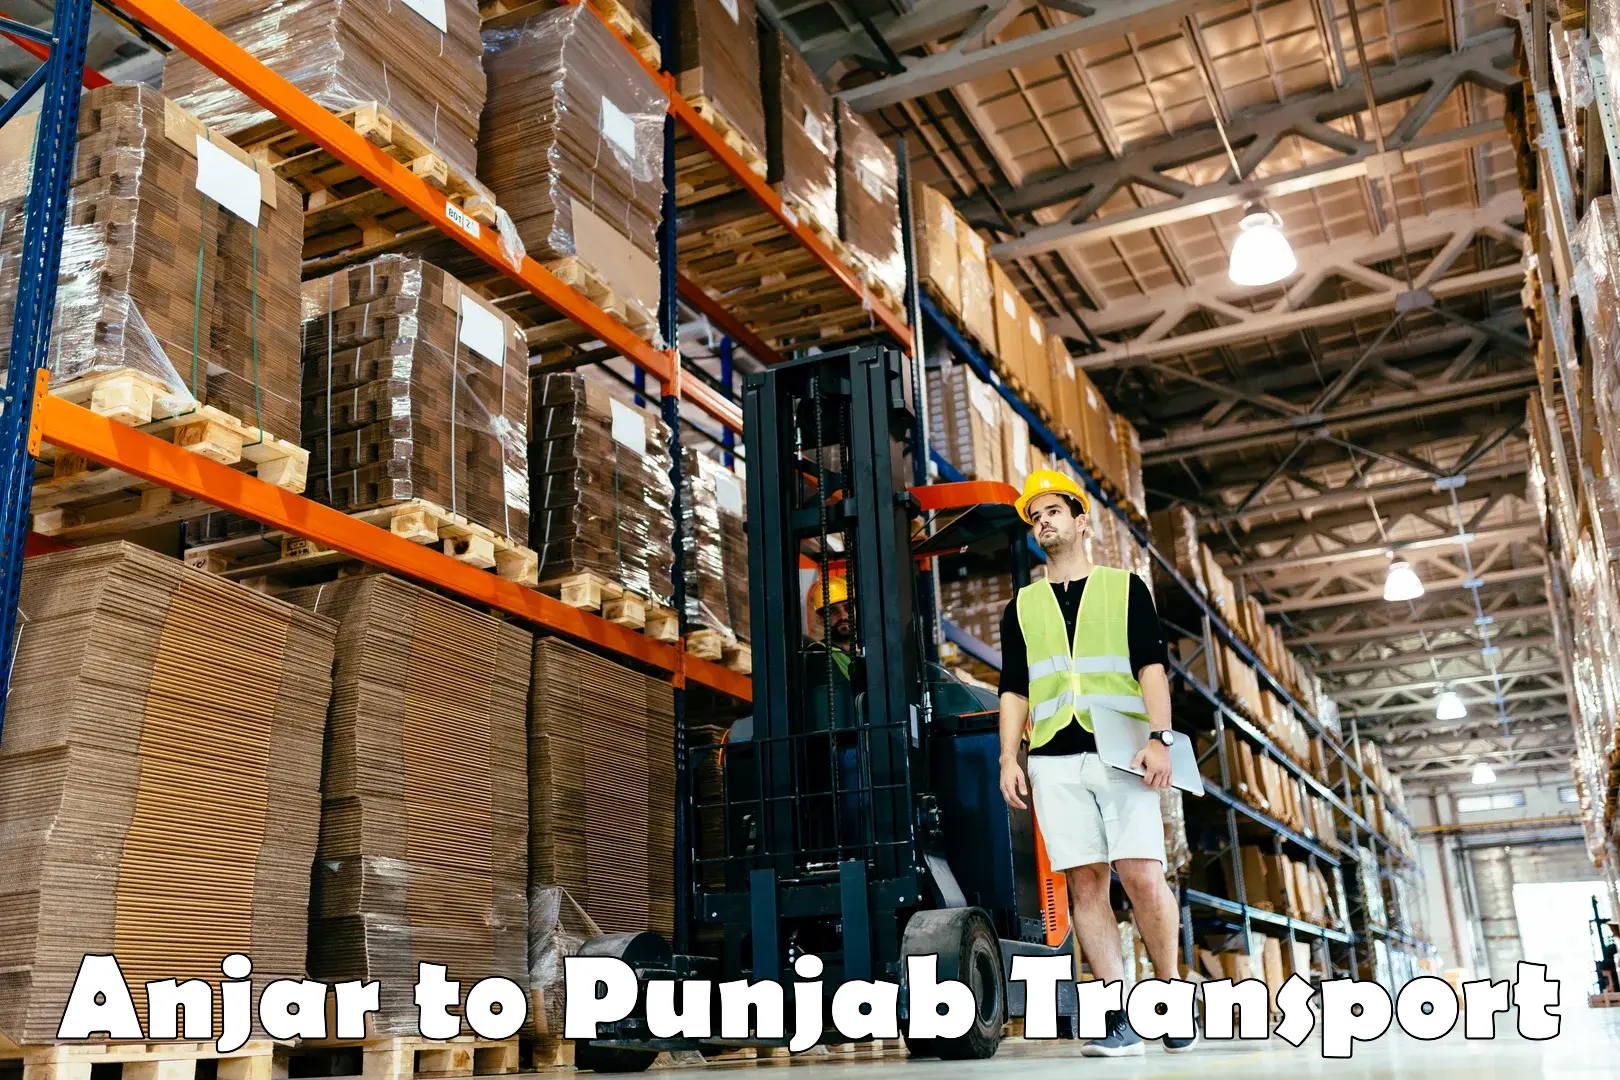 Lorry transport service Anjar to Punjab